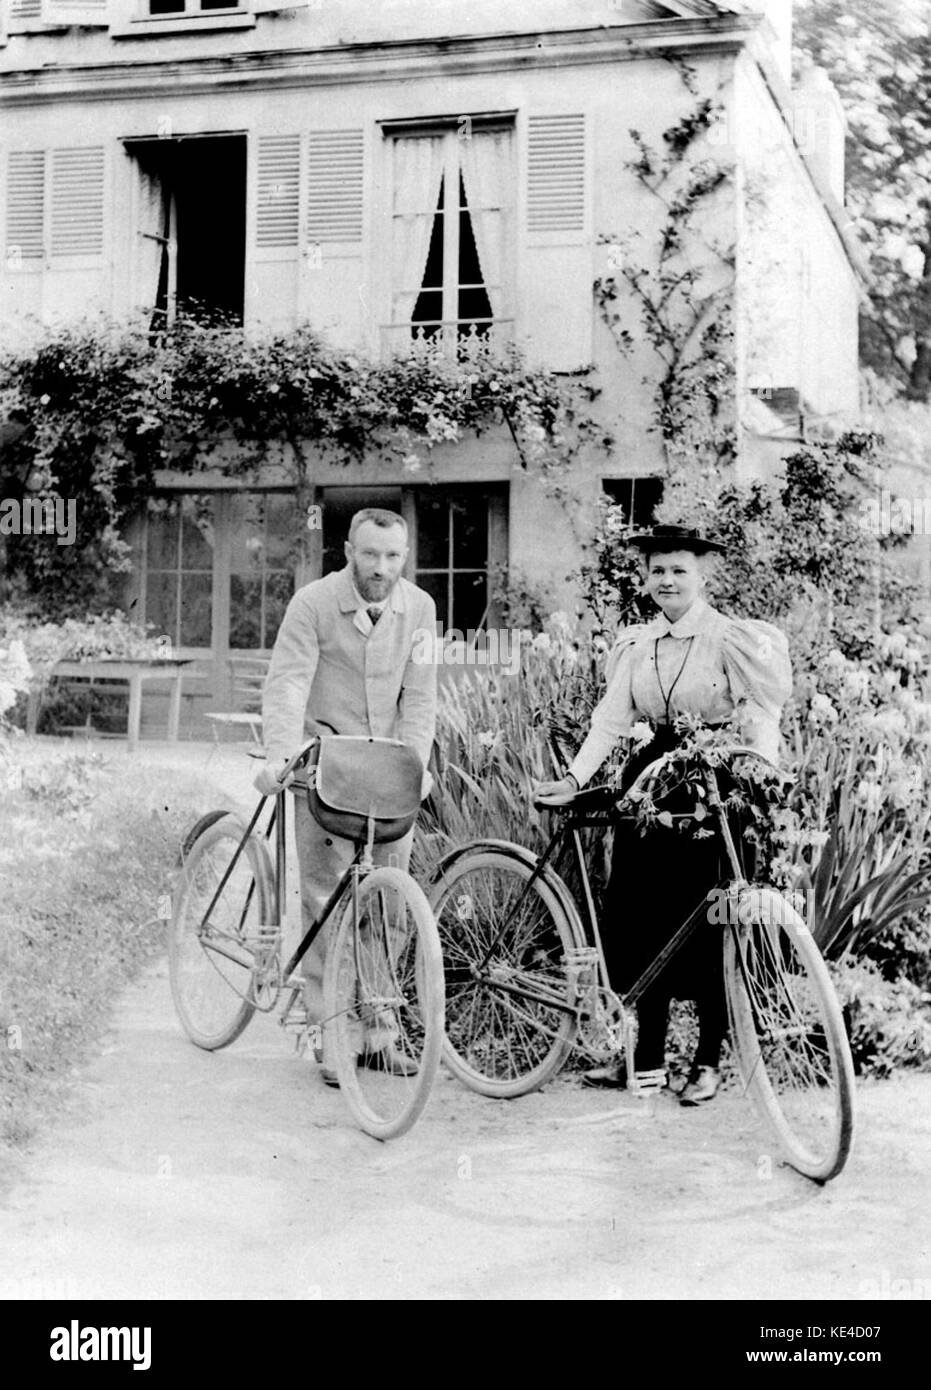 Pierre et Marie Curie devant leur maison de Sceaux en 1895 Foto Stock